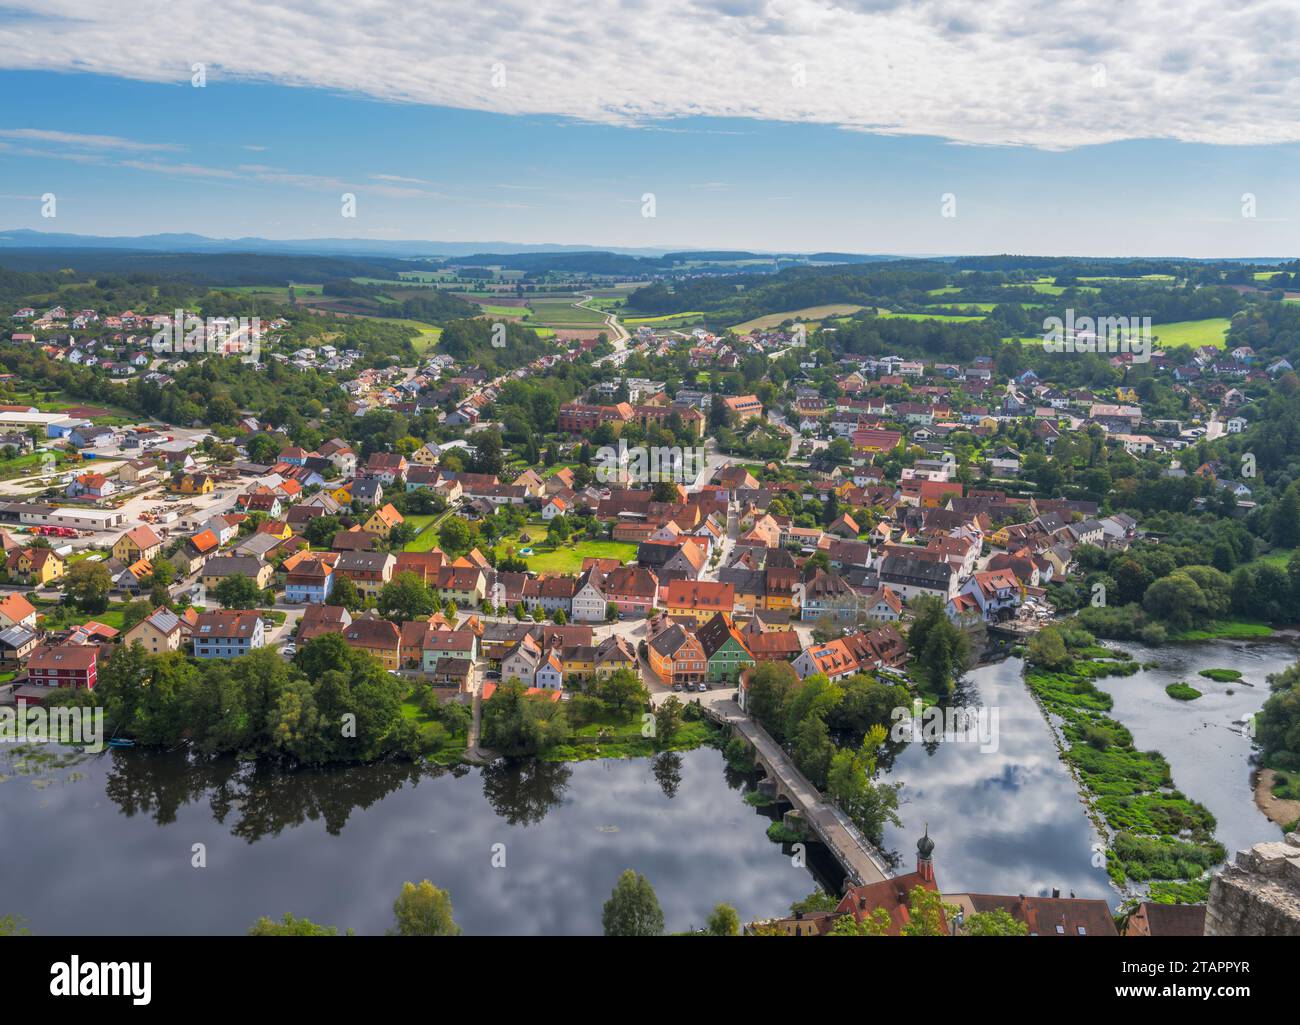 Vista aerea sul villaggio di Kallmuenz in Baviera Foto Stock